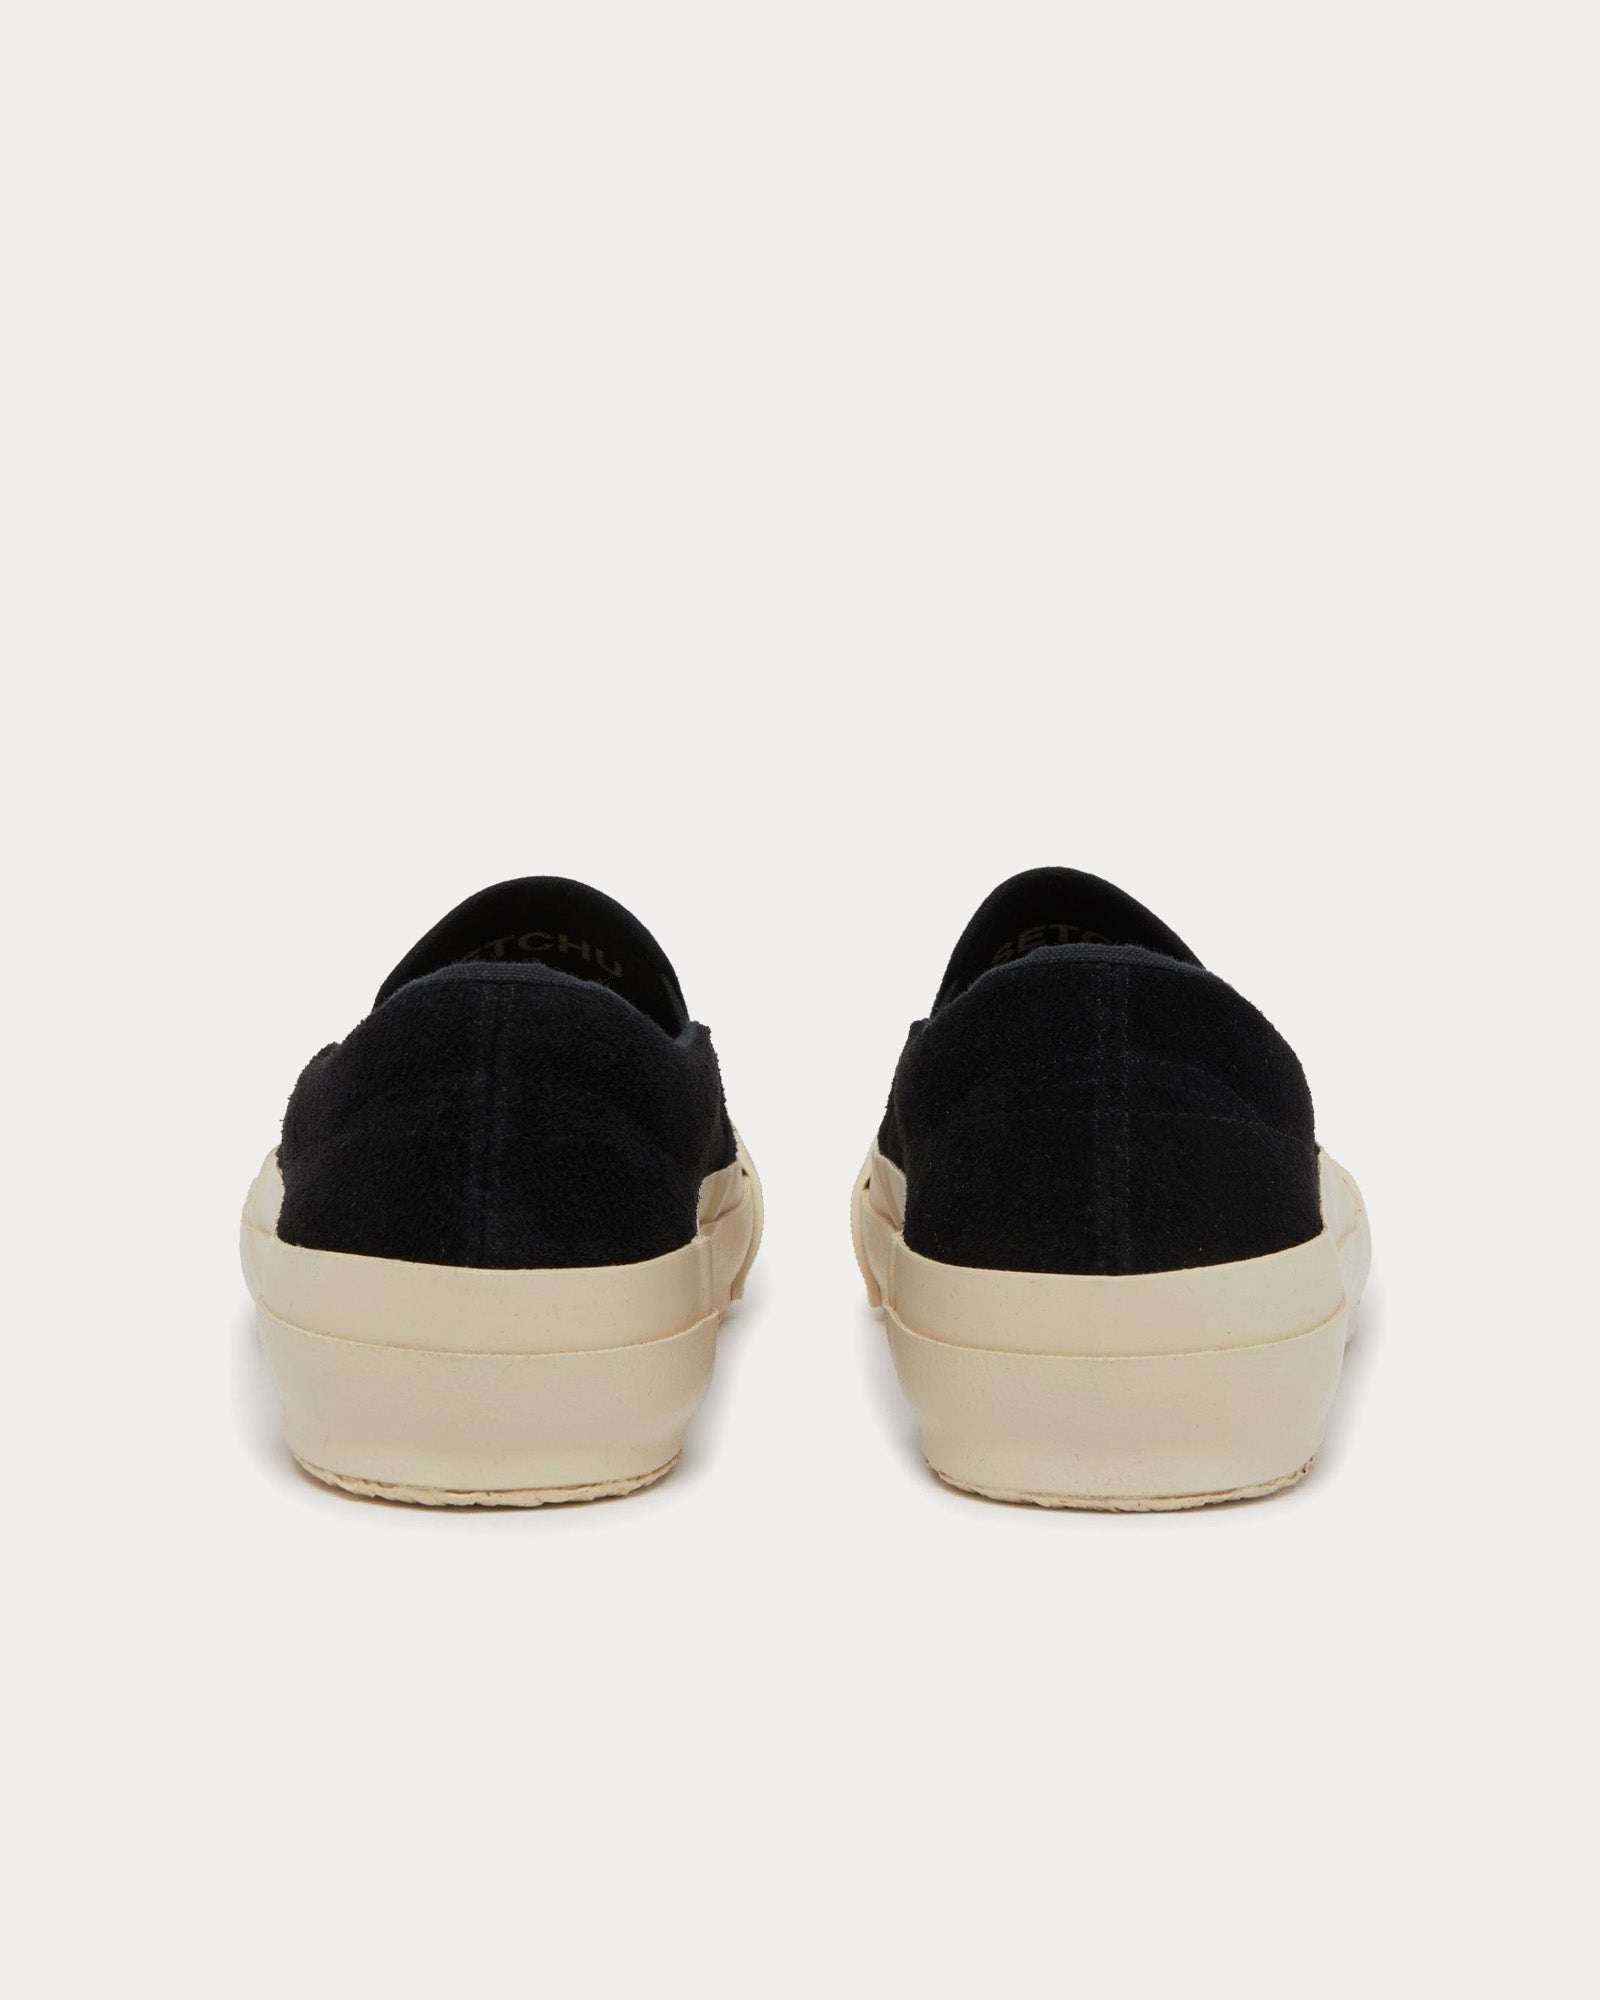 Setchu - Suede Black Slip On Sneakers